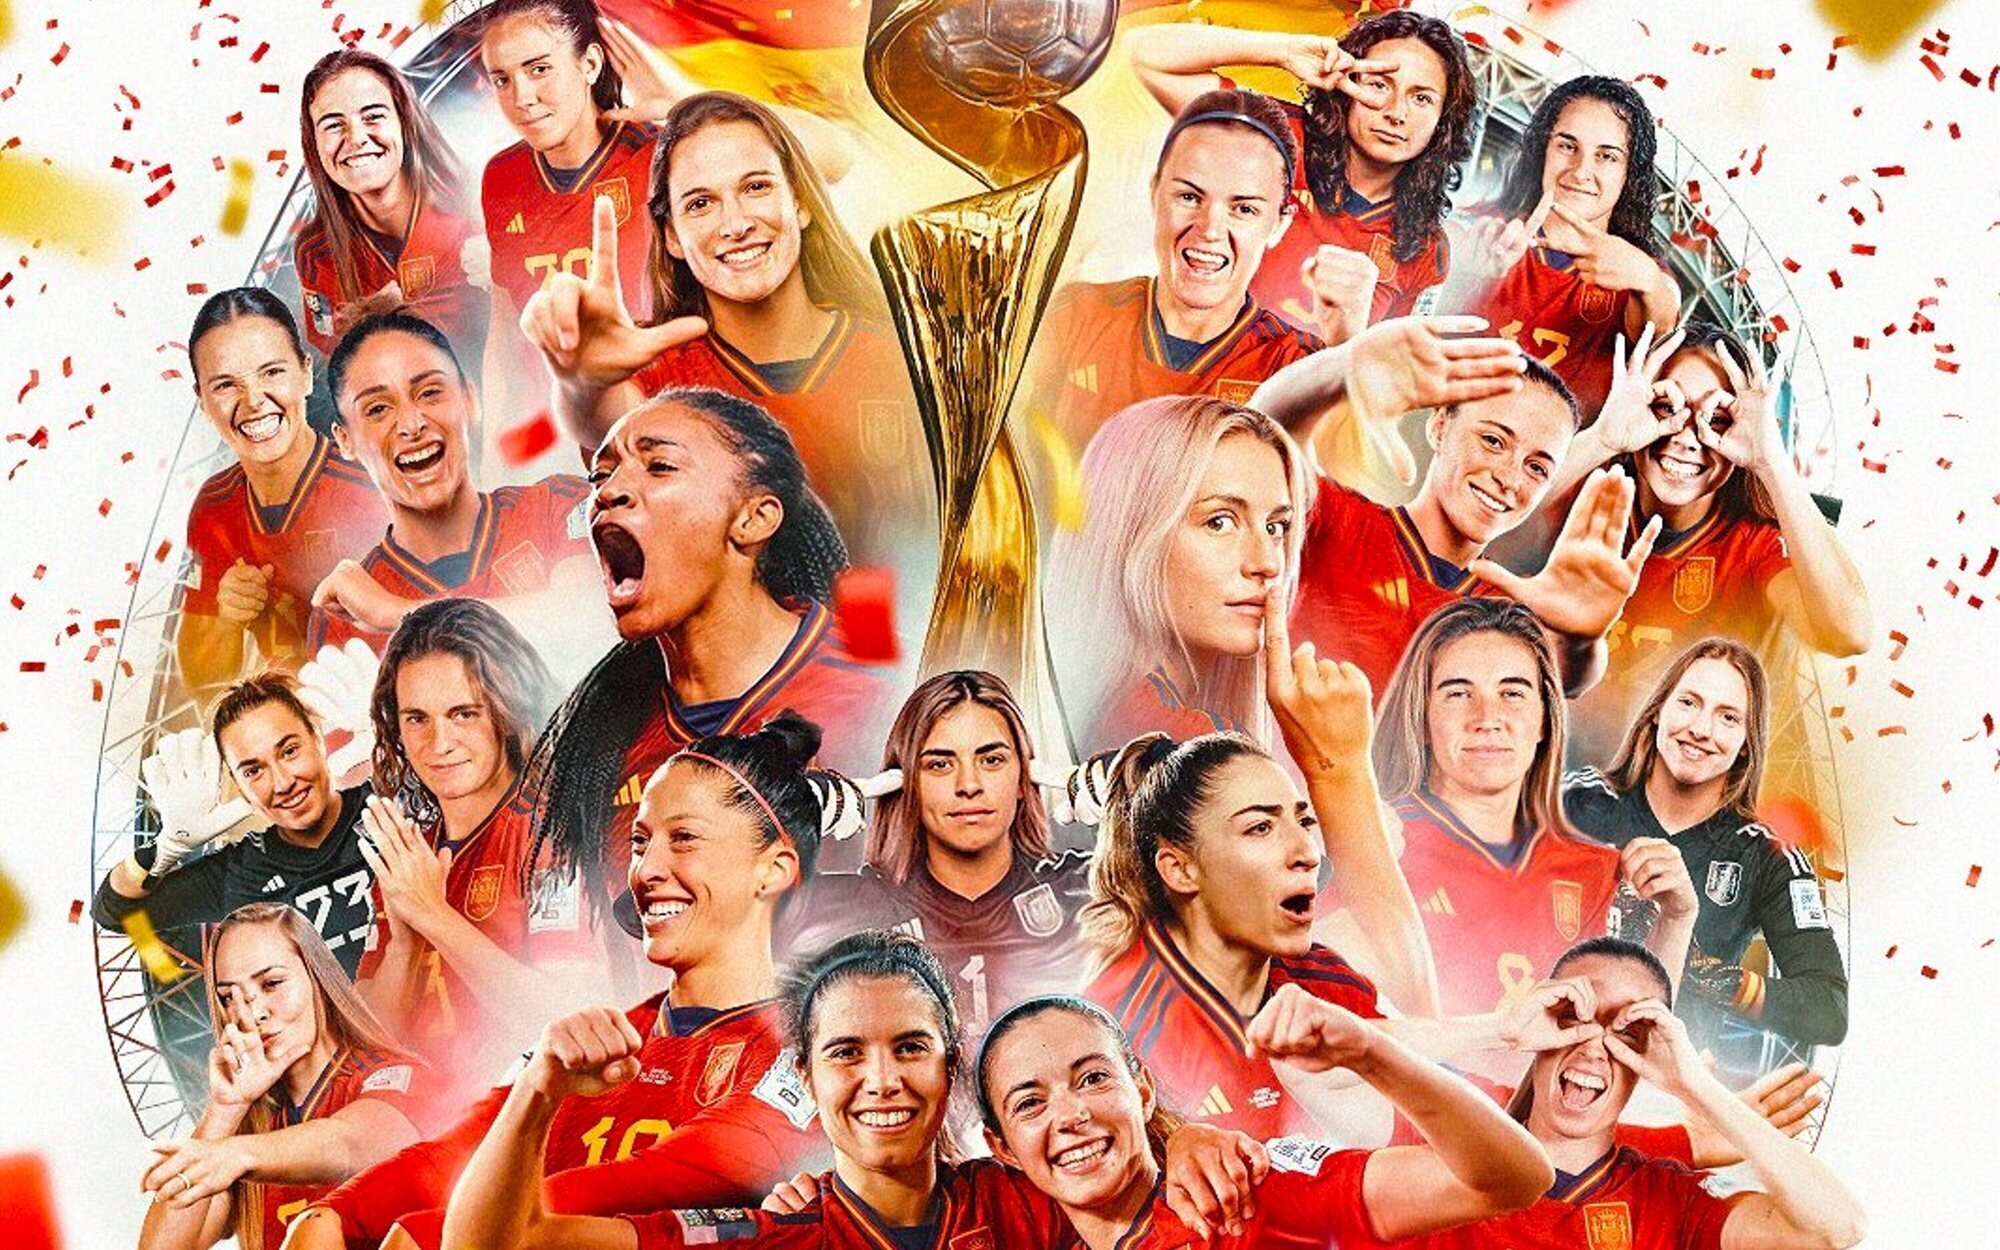 Análisis de audiencia de la Final del Mundial Femenino y la victoria de España con los datos más curiosos